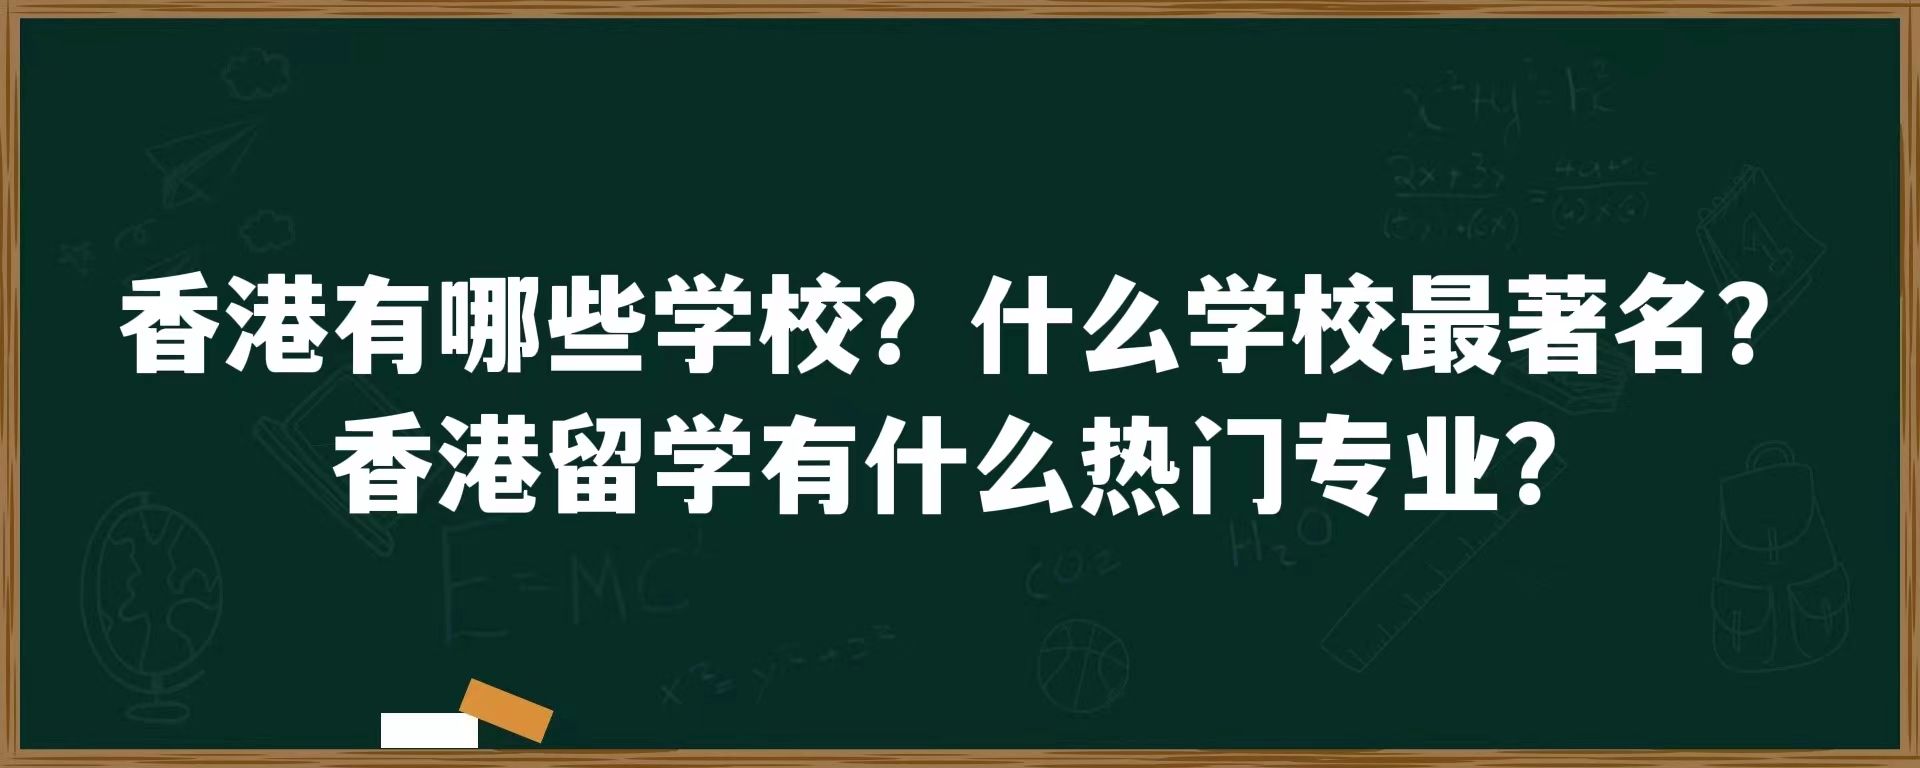 香港有哪些学校？什么学校最著名？香港留学有什么热门专业？